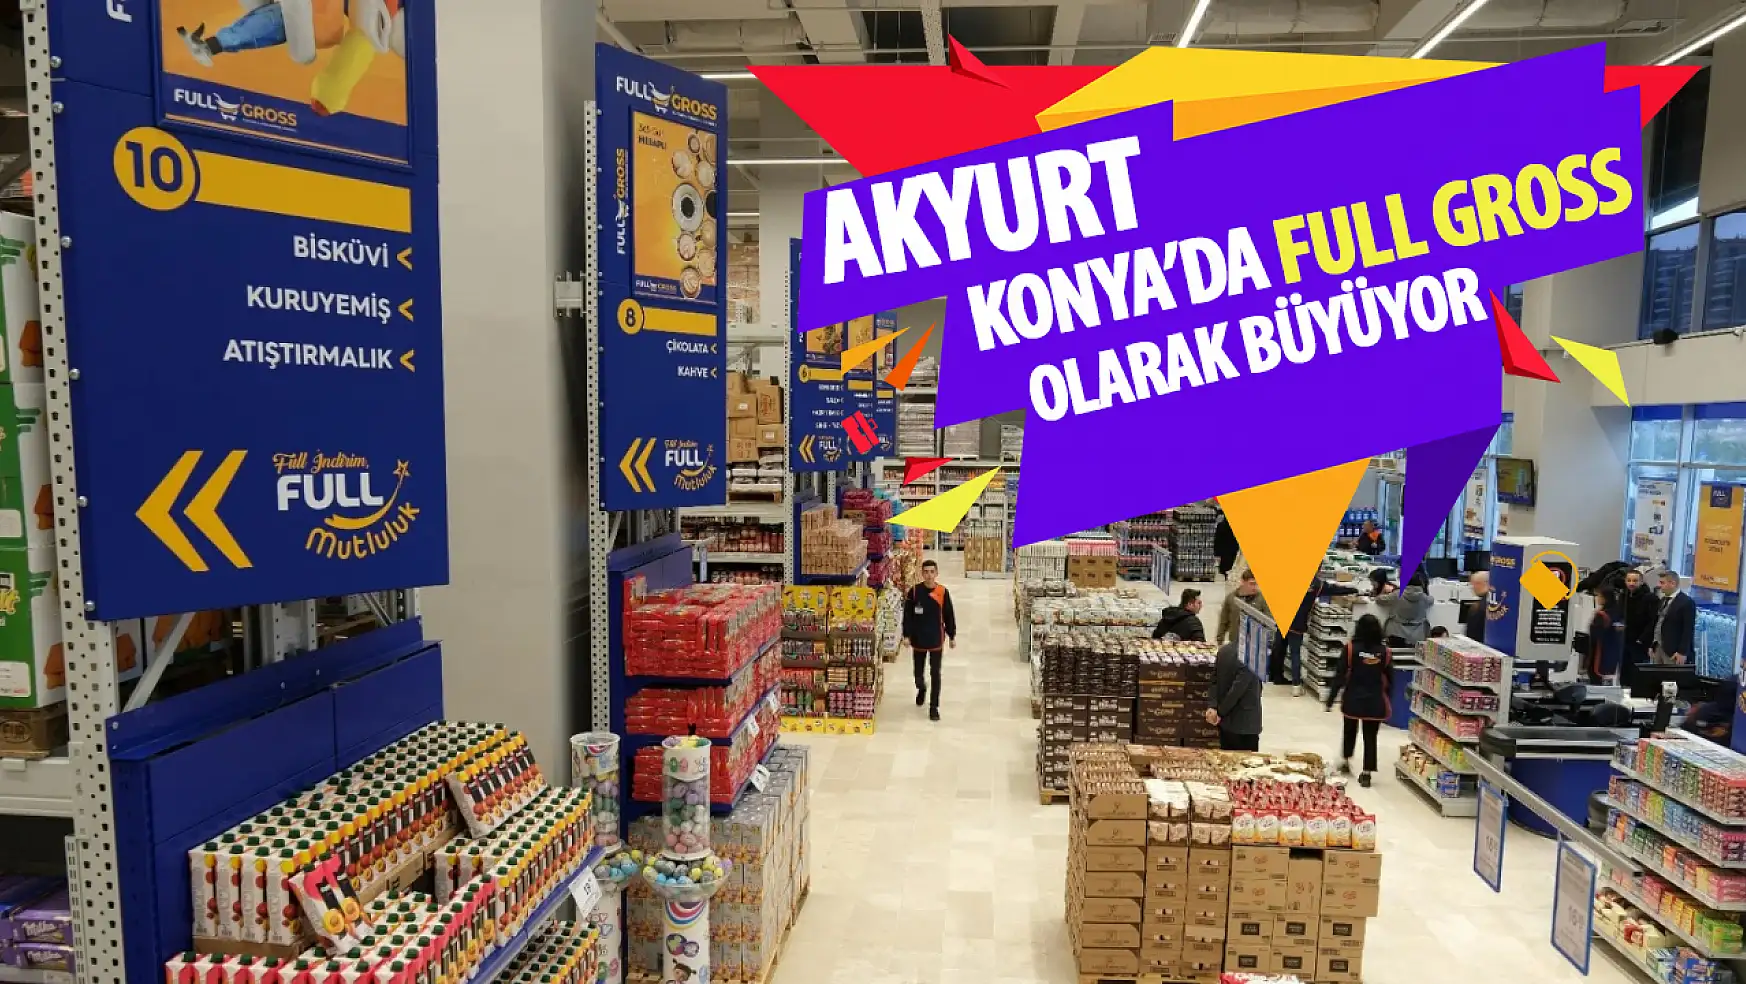 Akyurt Süpermarket Full Gross Market konsepti ile Konya'da büyümeye devam ediyor